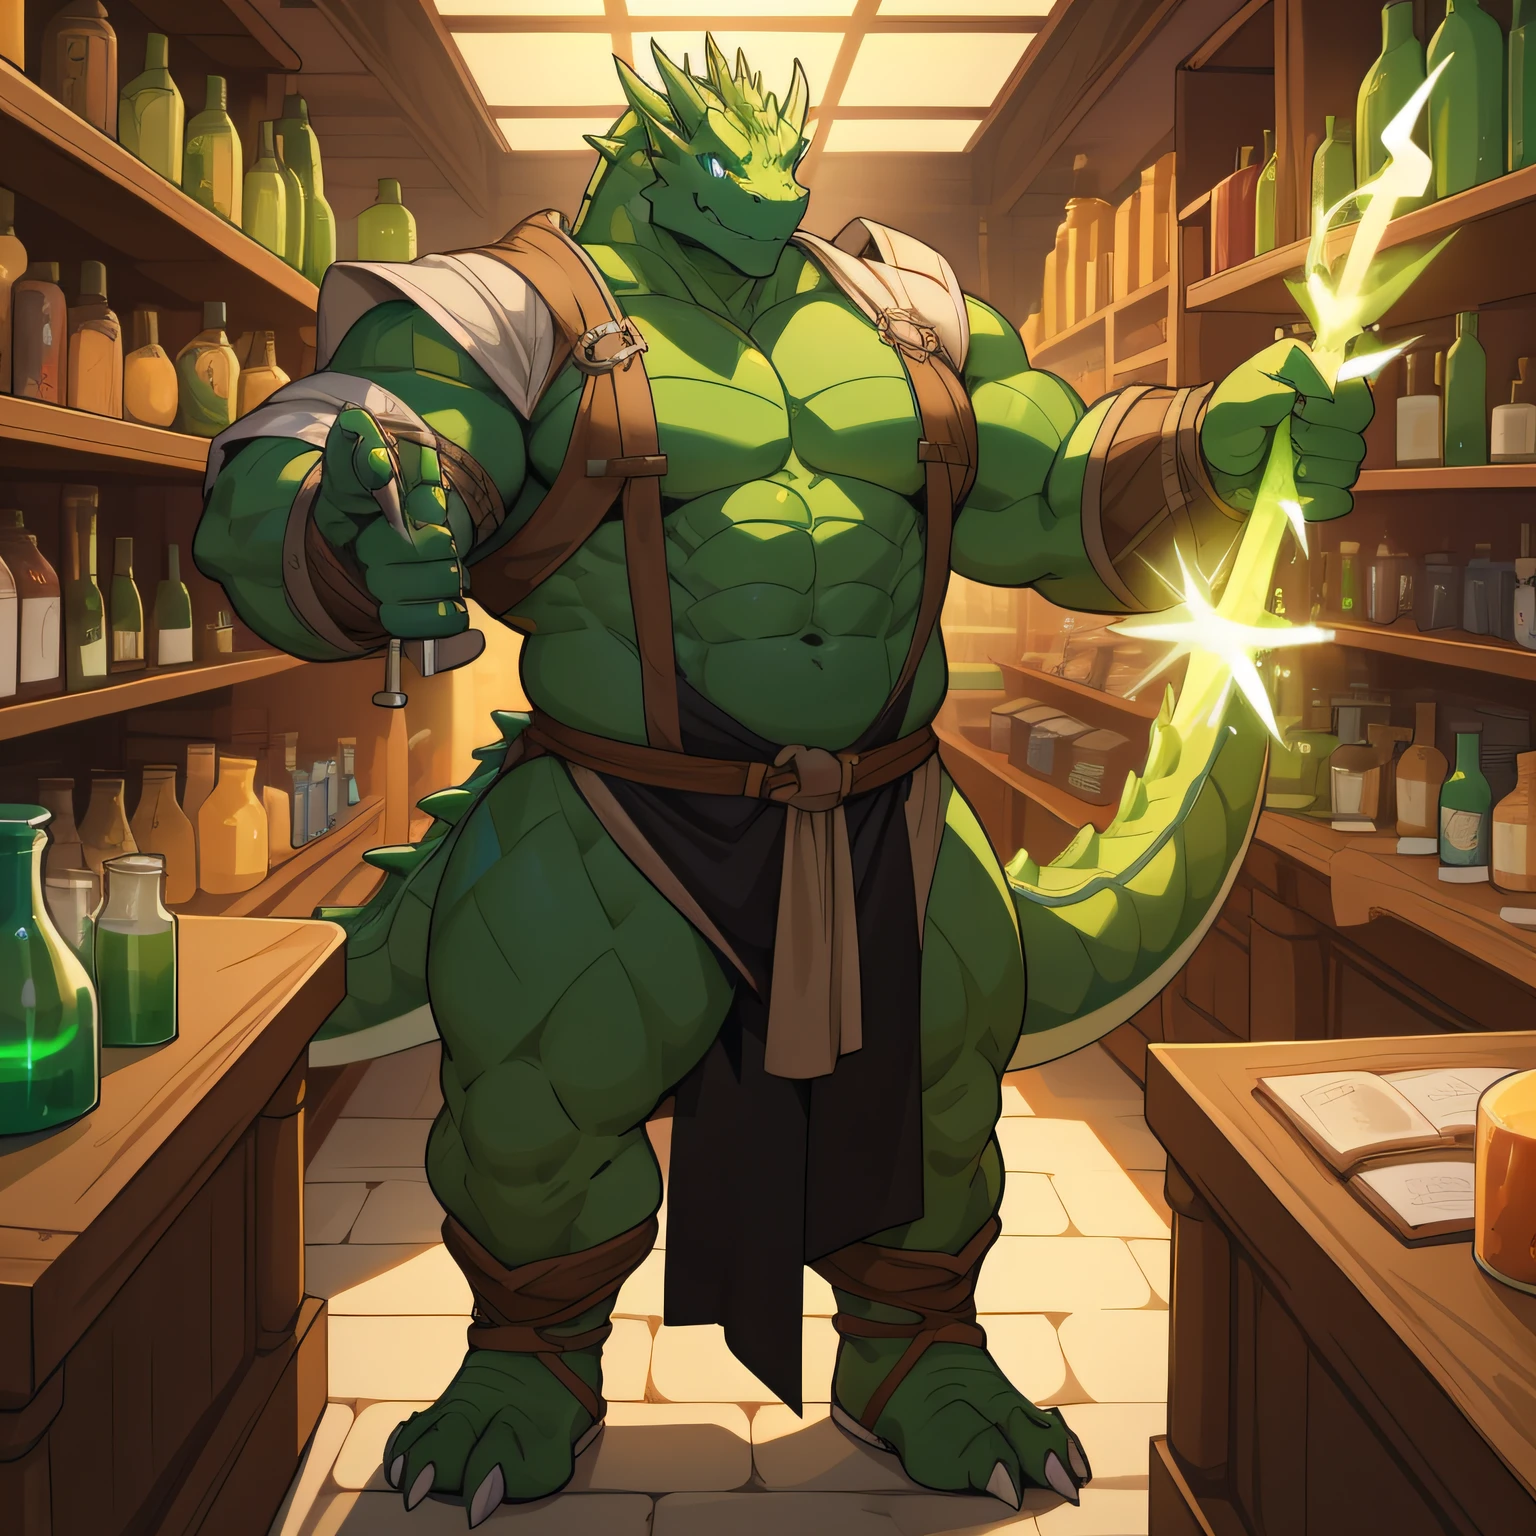 Массивный зеленый дракон в облегающей средневековой одежде с массивной грудью приветствует вас с приветливой улыбкой у прилавка в магазине, полном светящихся зелий., все тело